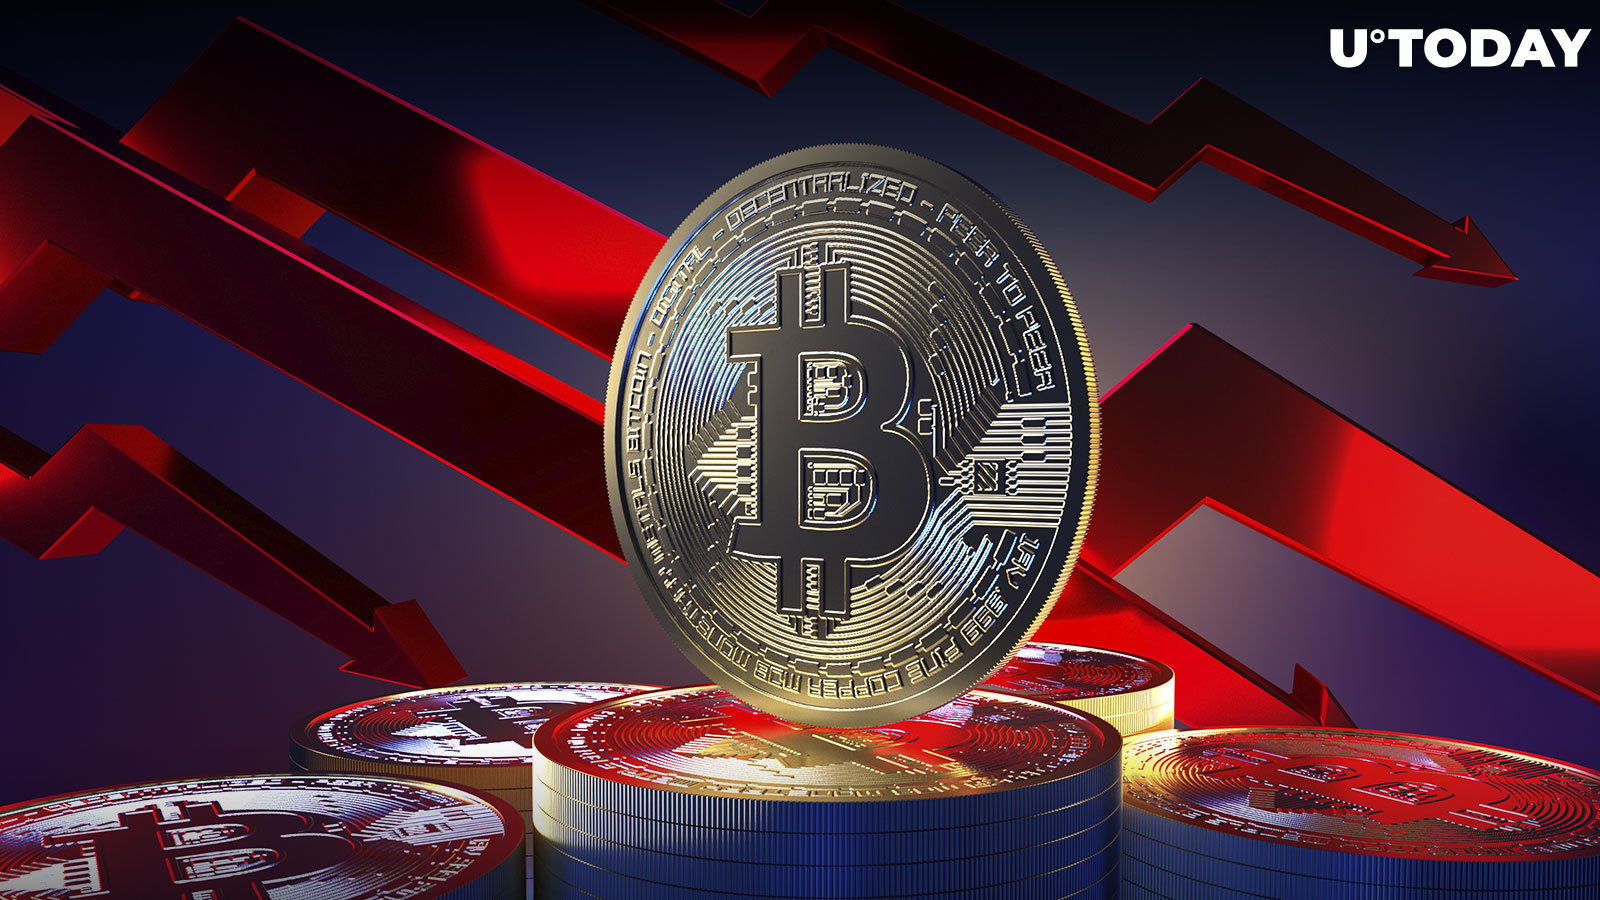 Bitcoin (BTC) Sees $630 Million Outflows Amid Crypto Bloodbath